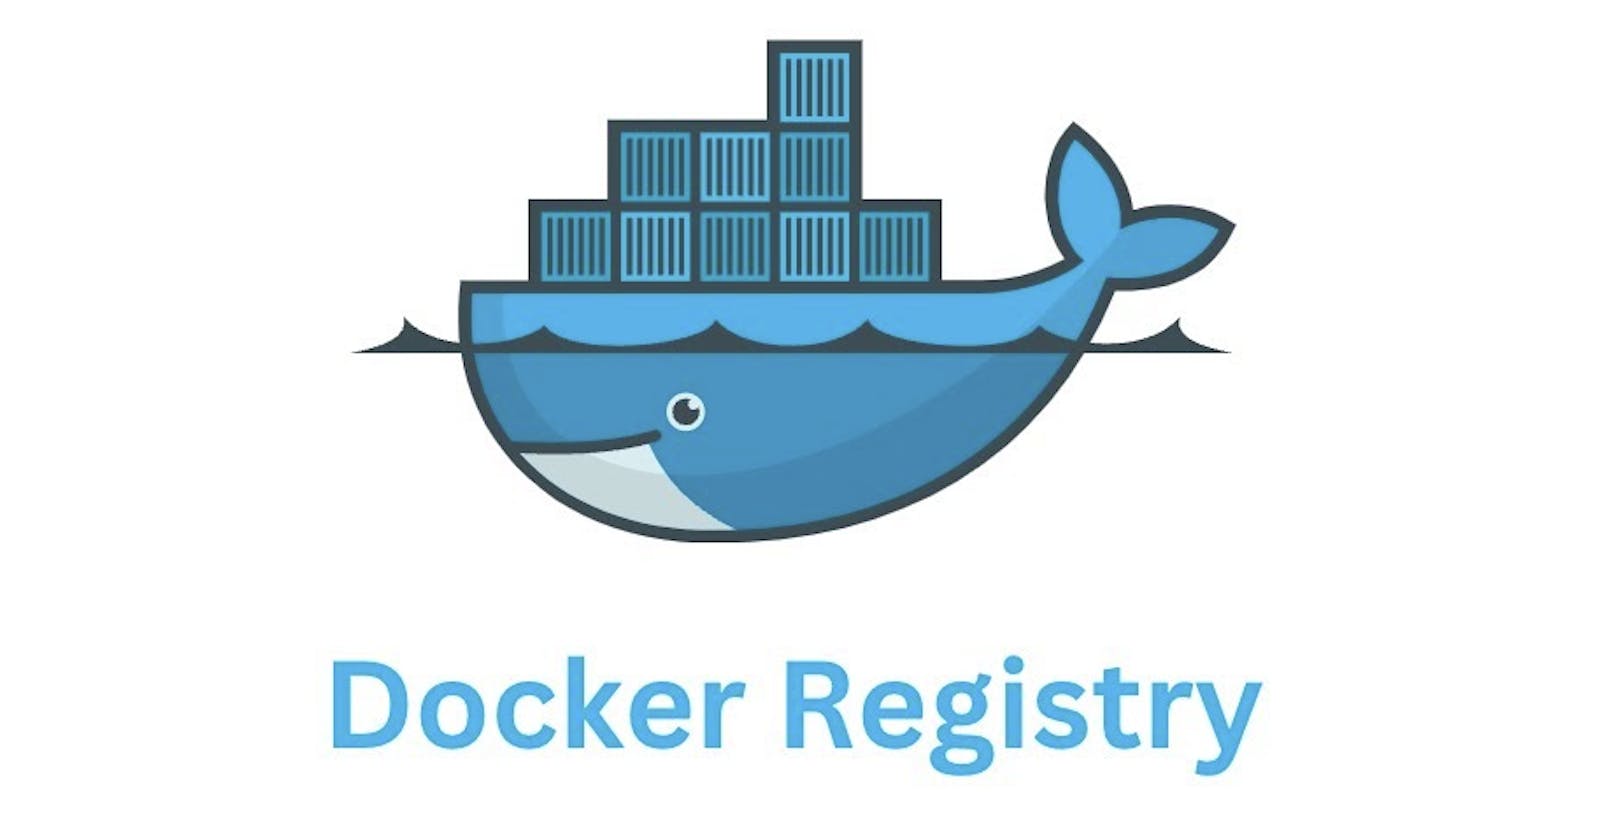 Create a Docker registry